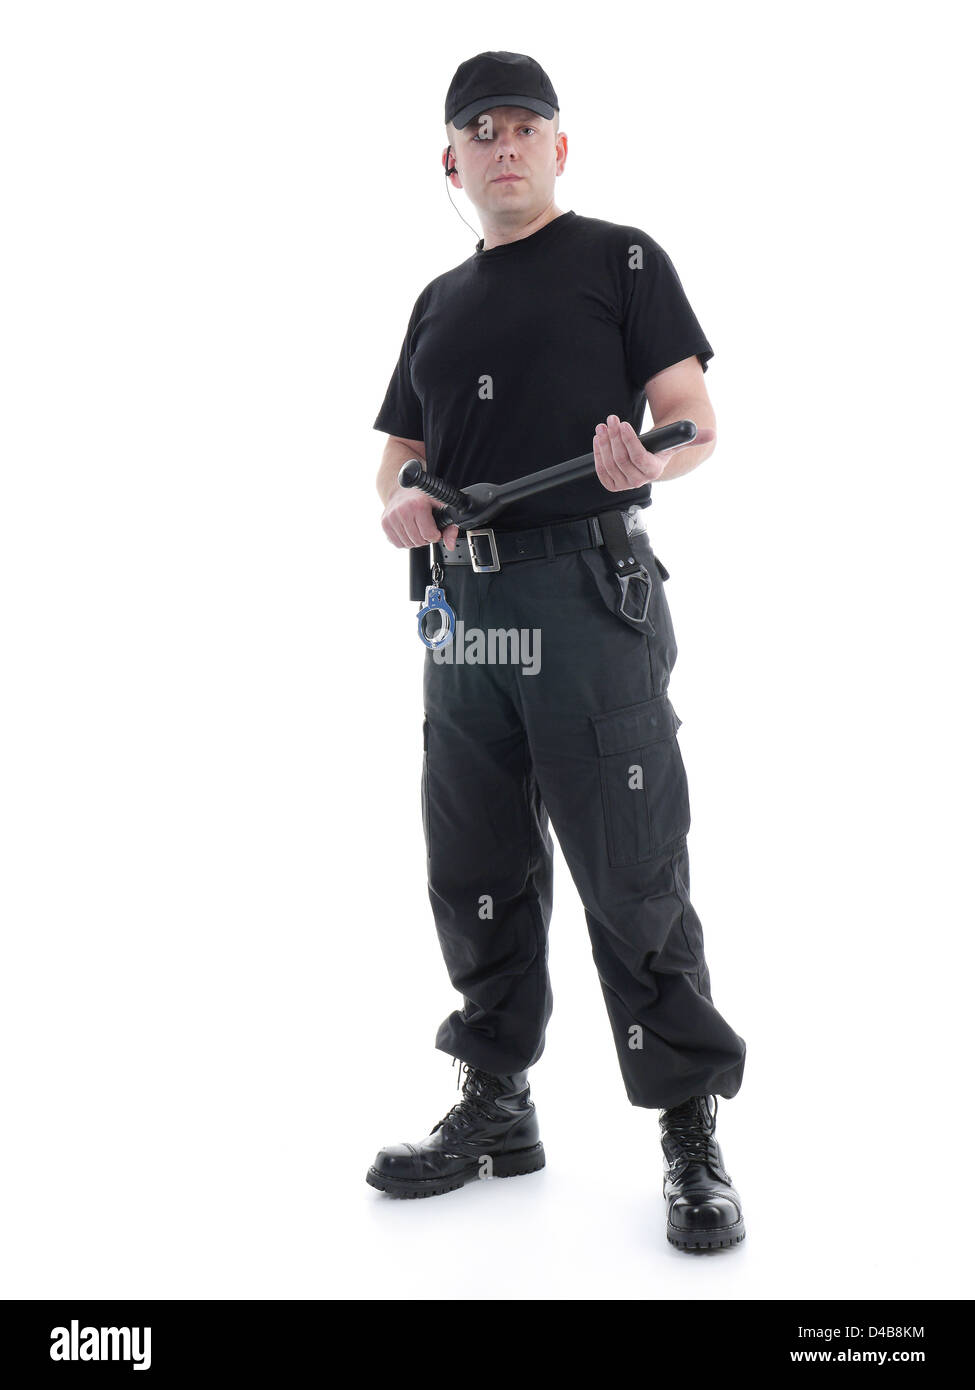 Homme portant l'uniforme noir de sécurité tenue police club dans les deux mains avec confiance permanent,shot on white Banque D'Images